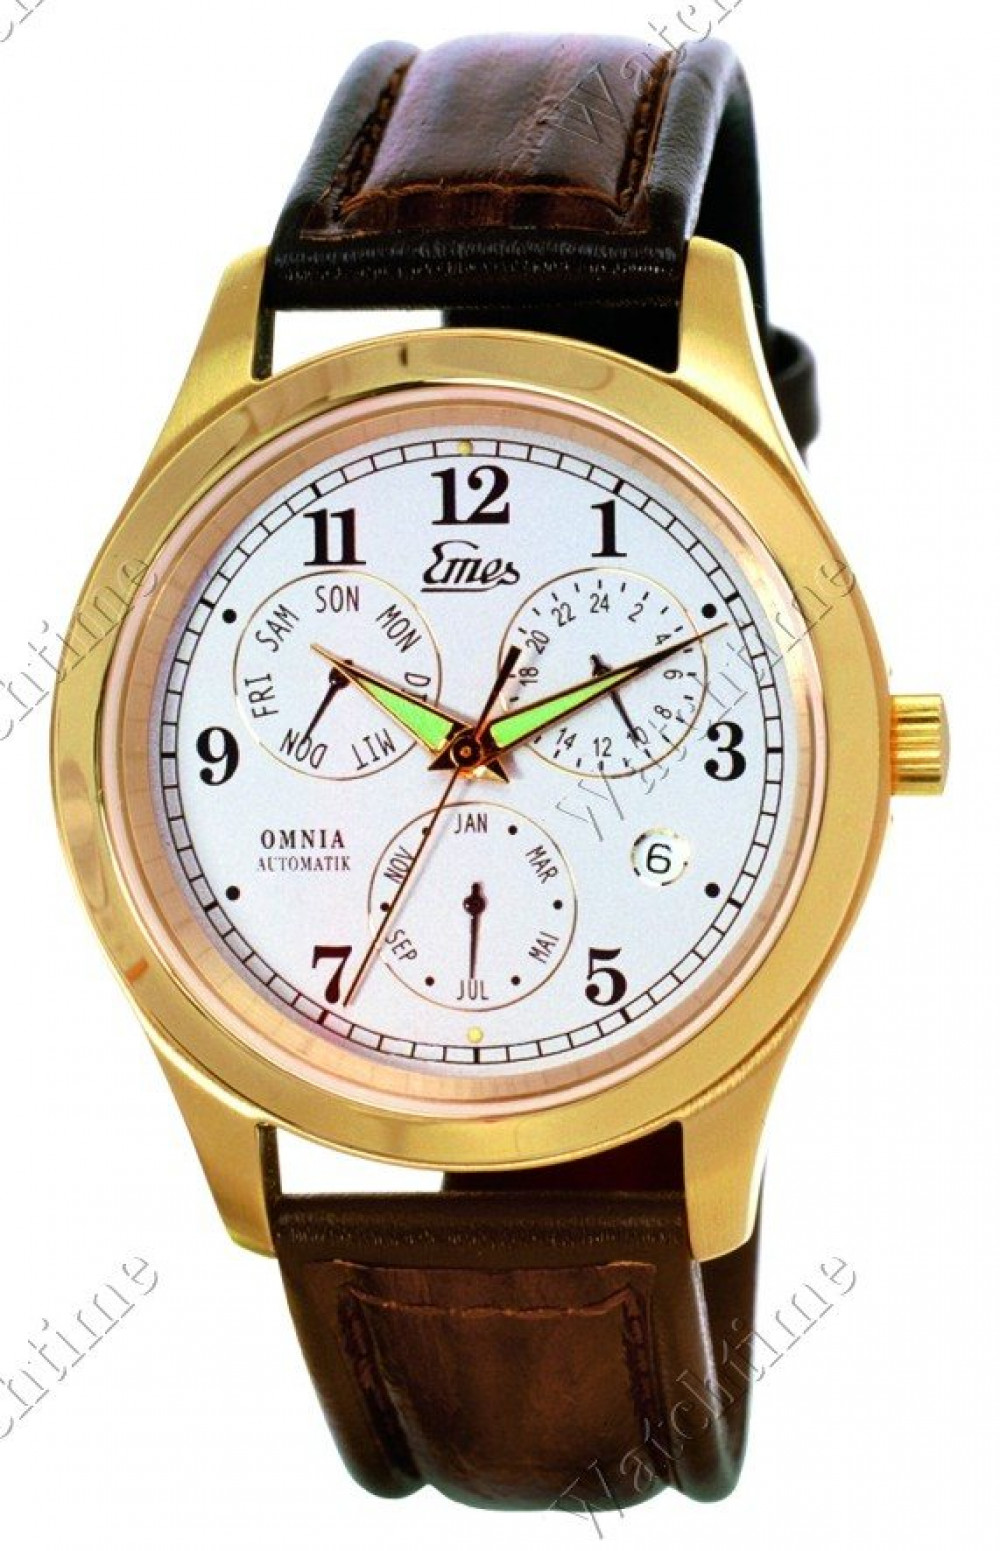 Zegarek firmy Emes1879, model Omnia